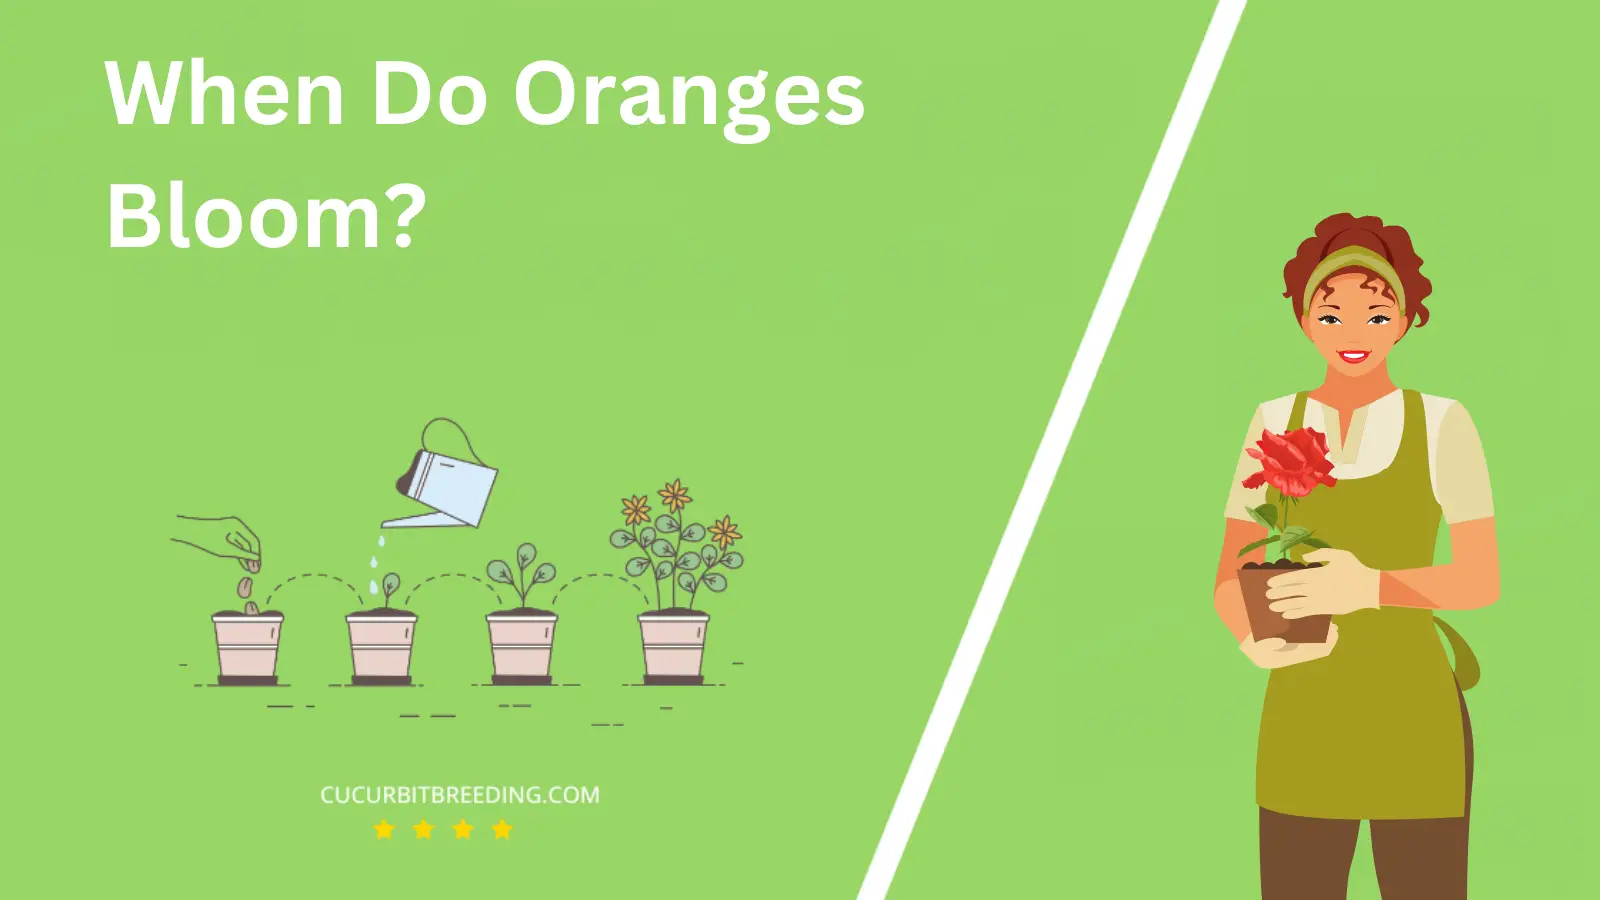 When Do Oranges Bloom?